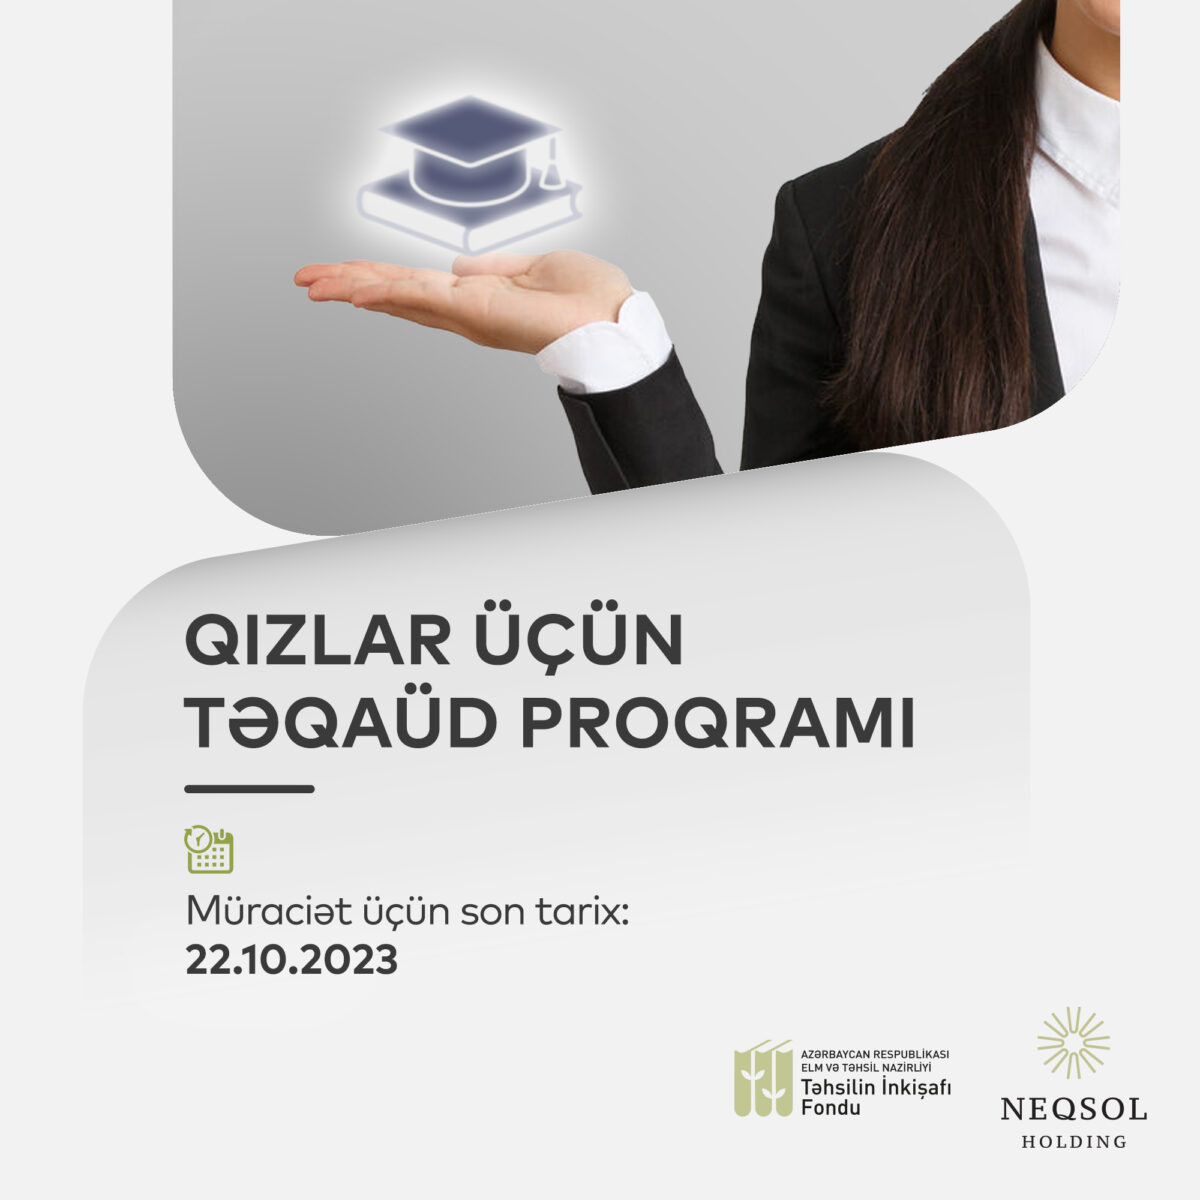 Təhsilin İnkişafı Fondu və “NEQSOL Holding” tələbə qızlar üçün təqaüd proqramı elan edir.